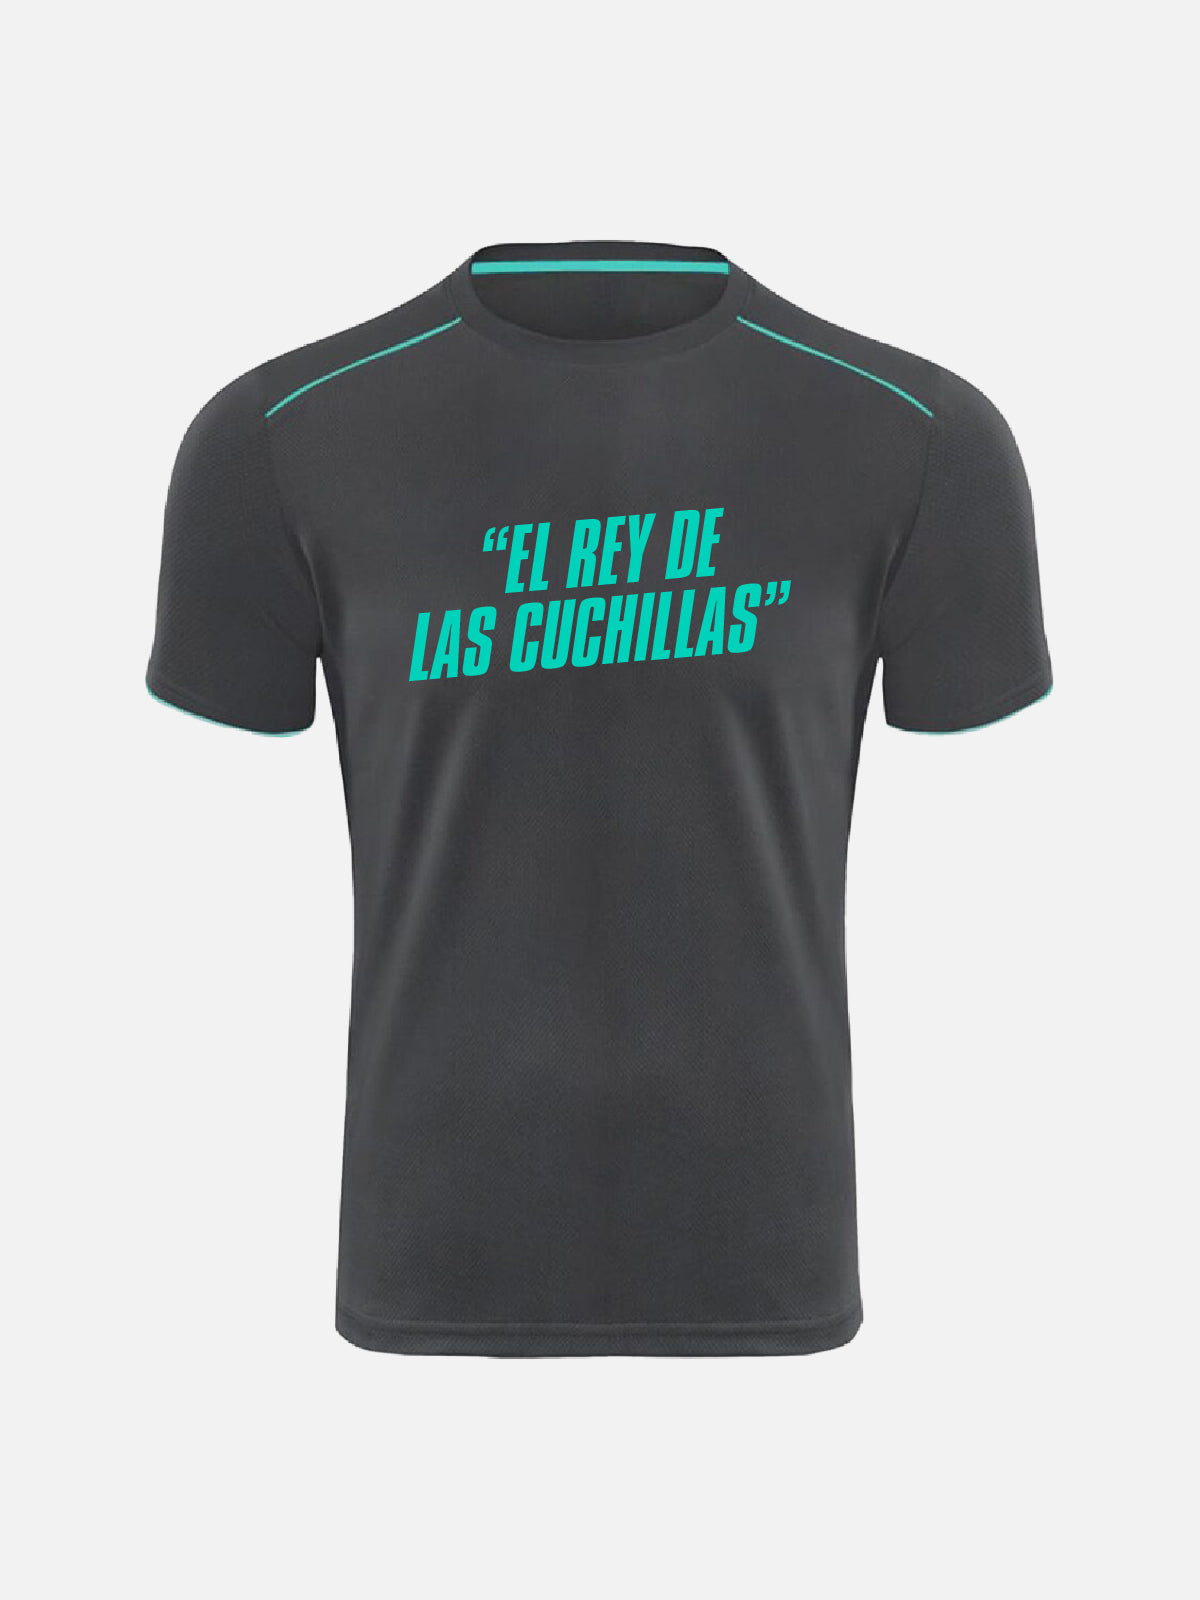 T-shirt - "El Rey De Las Cuchillas"